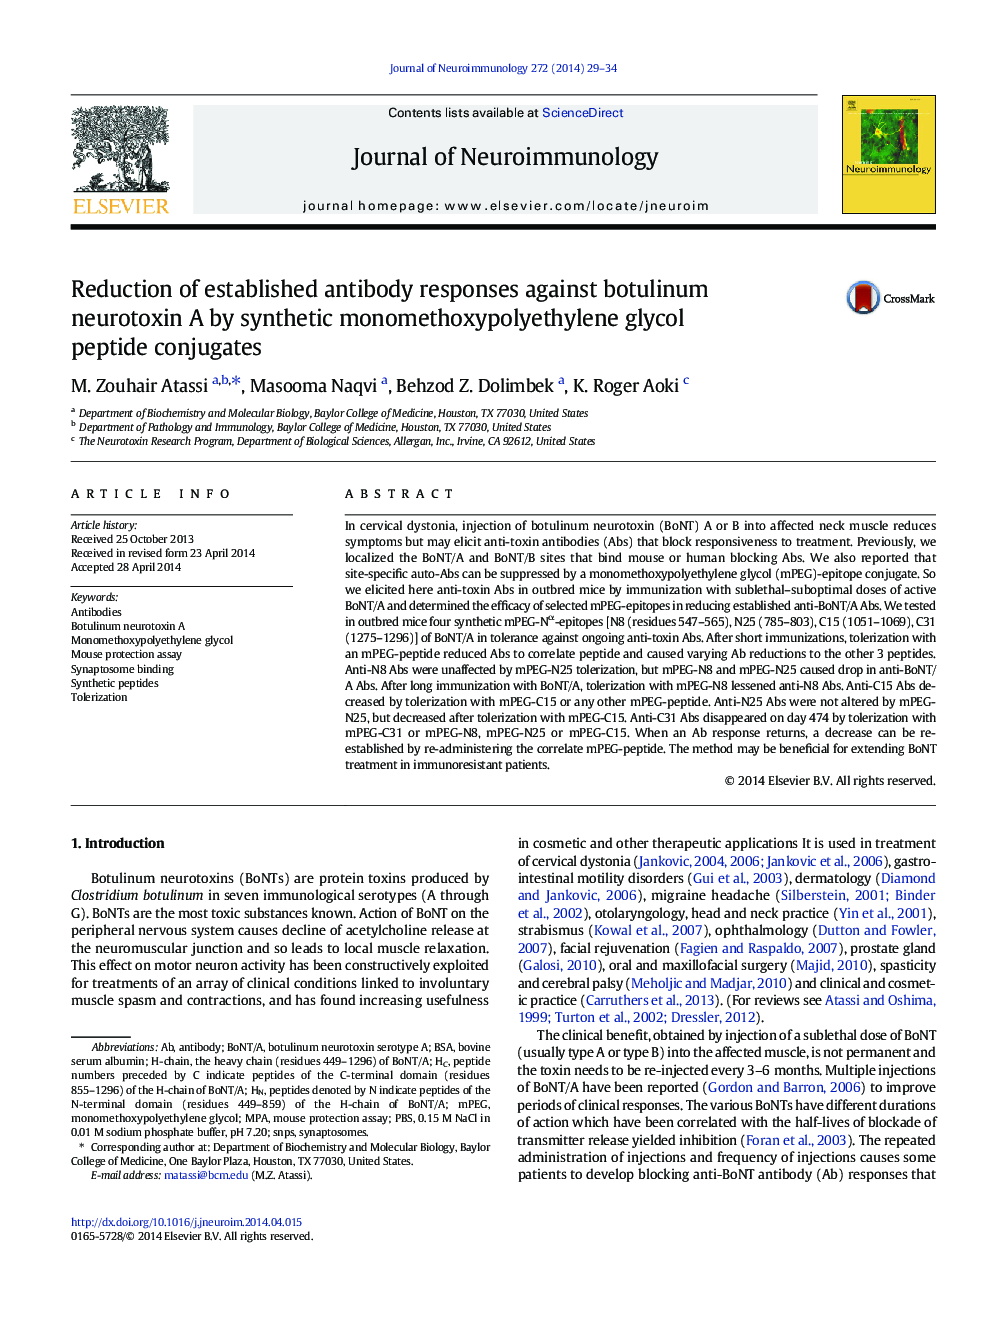 Reduction of established antibody responses against botulinum neurotoxin A by synthetic monomethoxypolyethylene glycol peptide conjugates